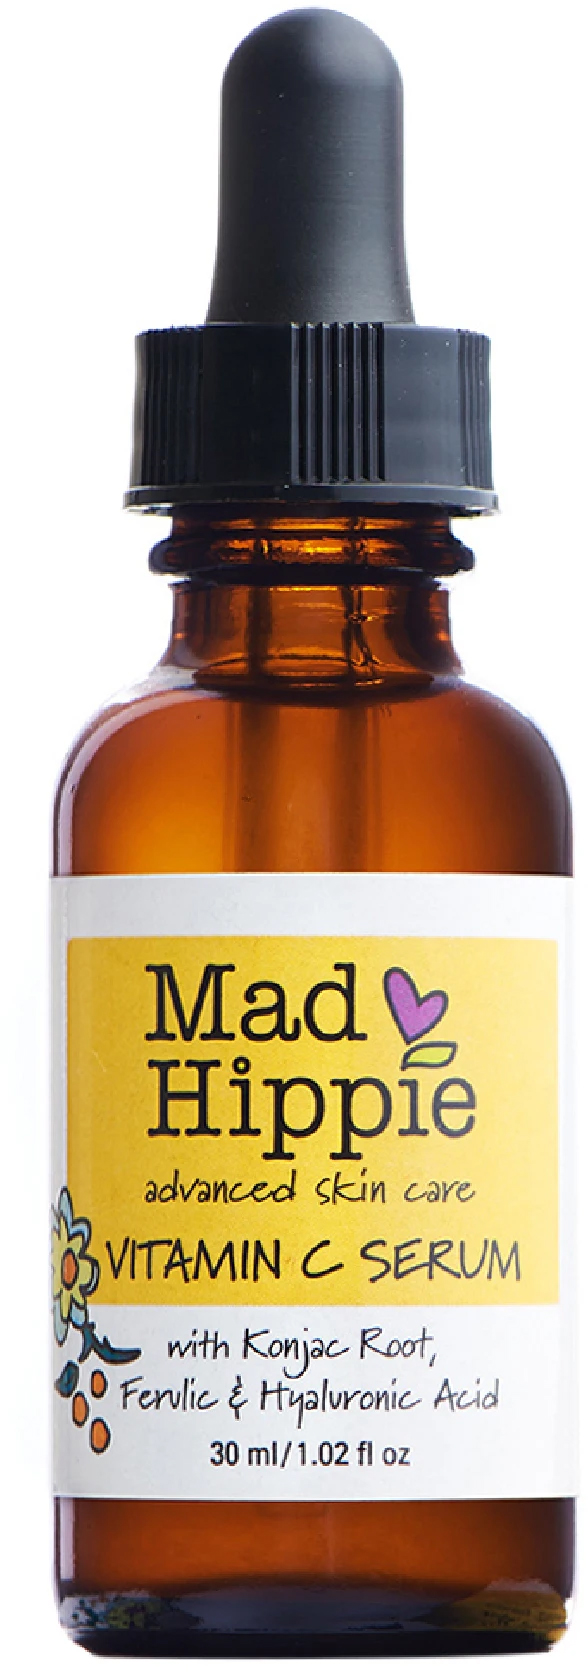 Mad Hippie Vitamin C Serum